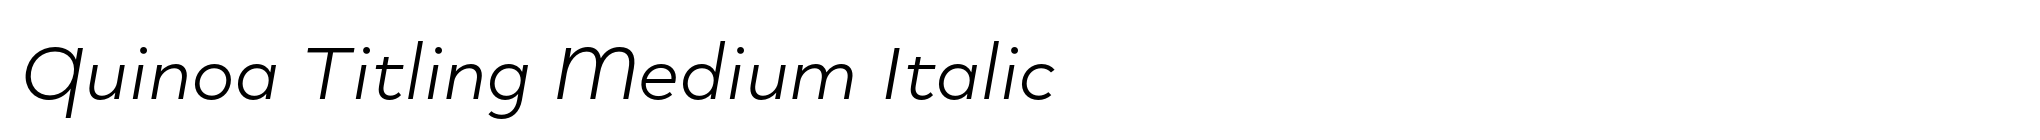 Quinoa Titling Medium Italic image